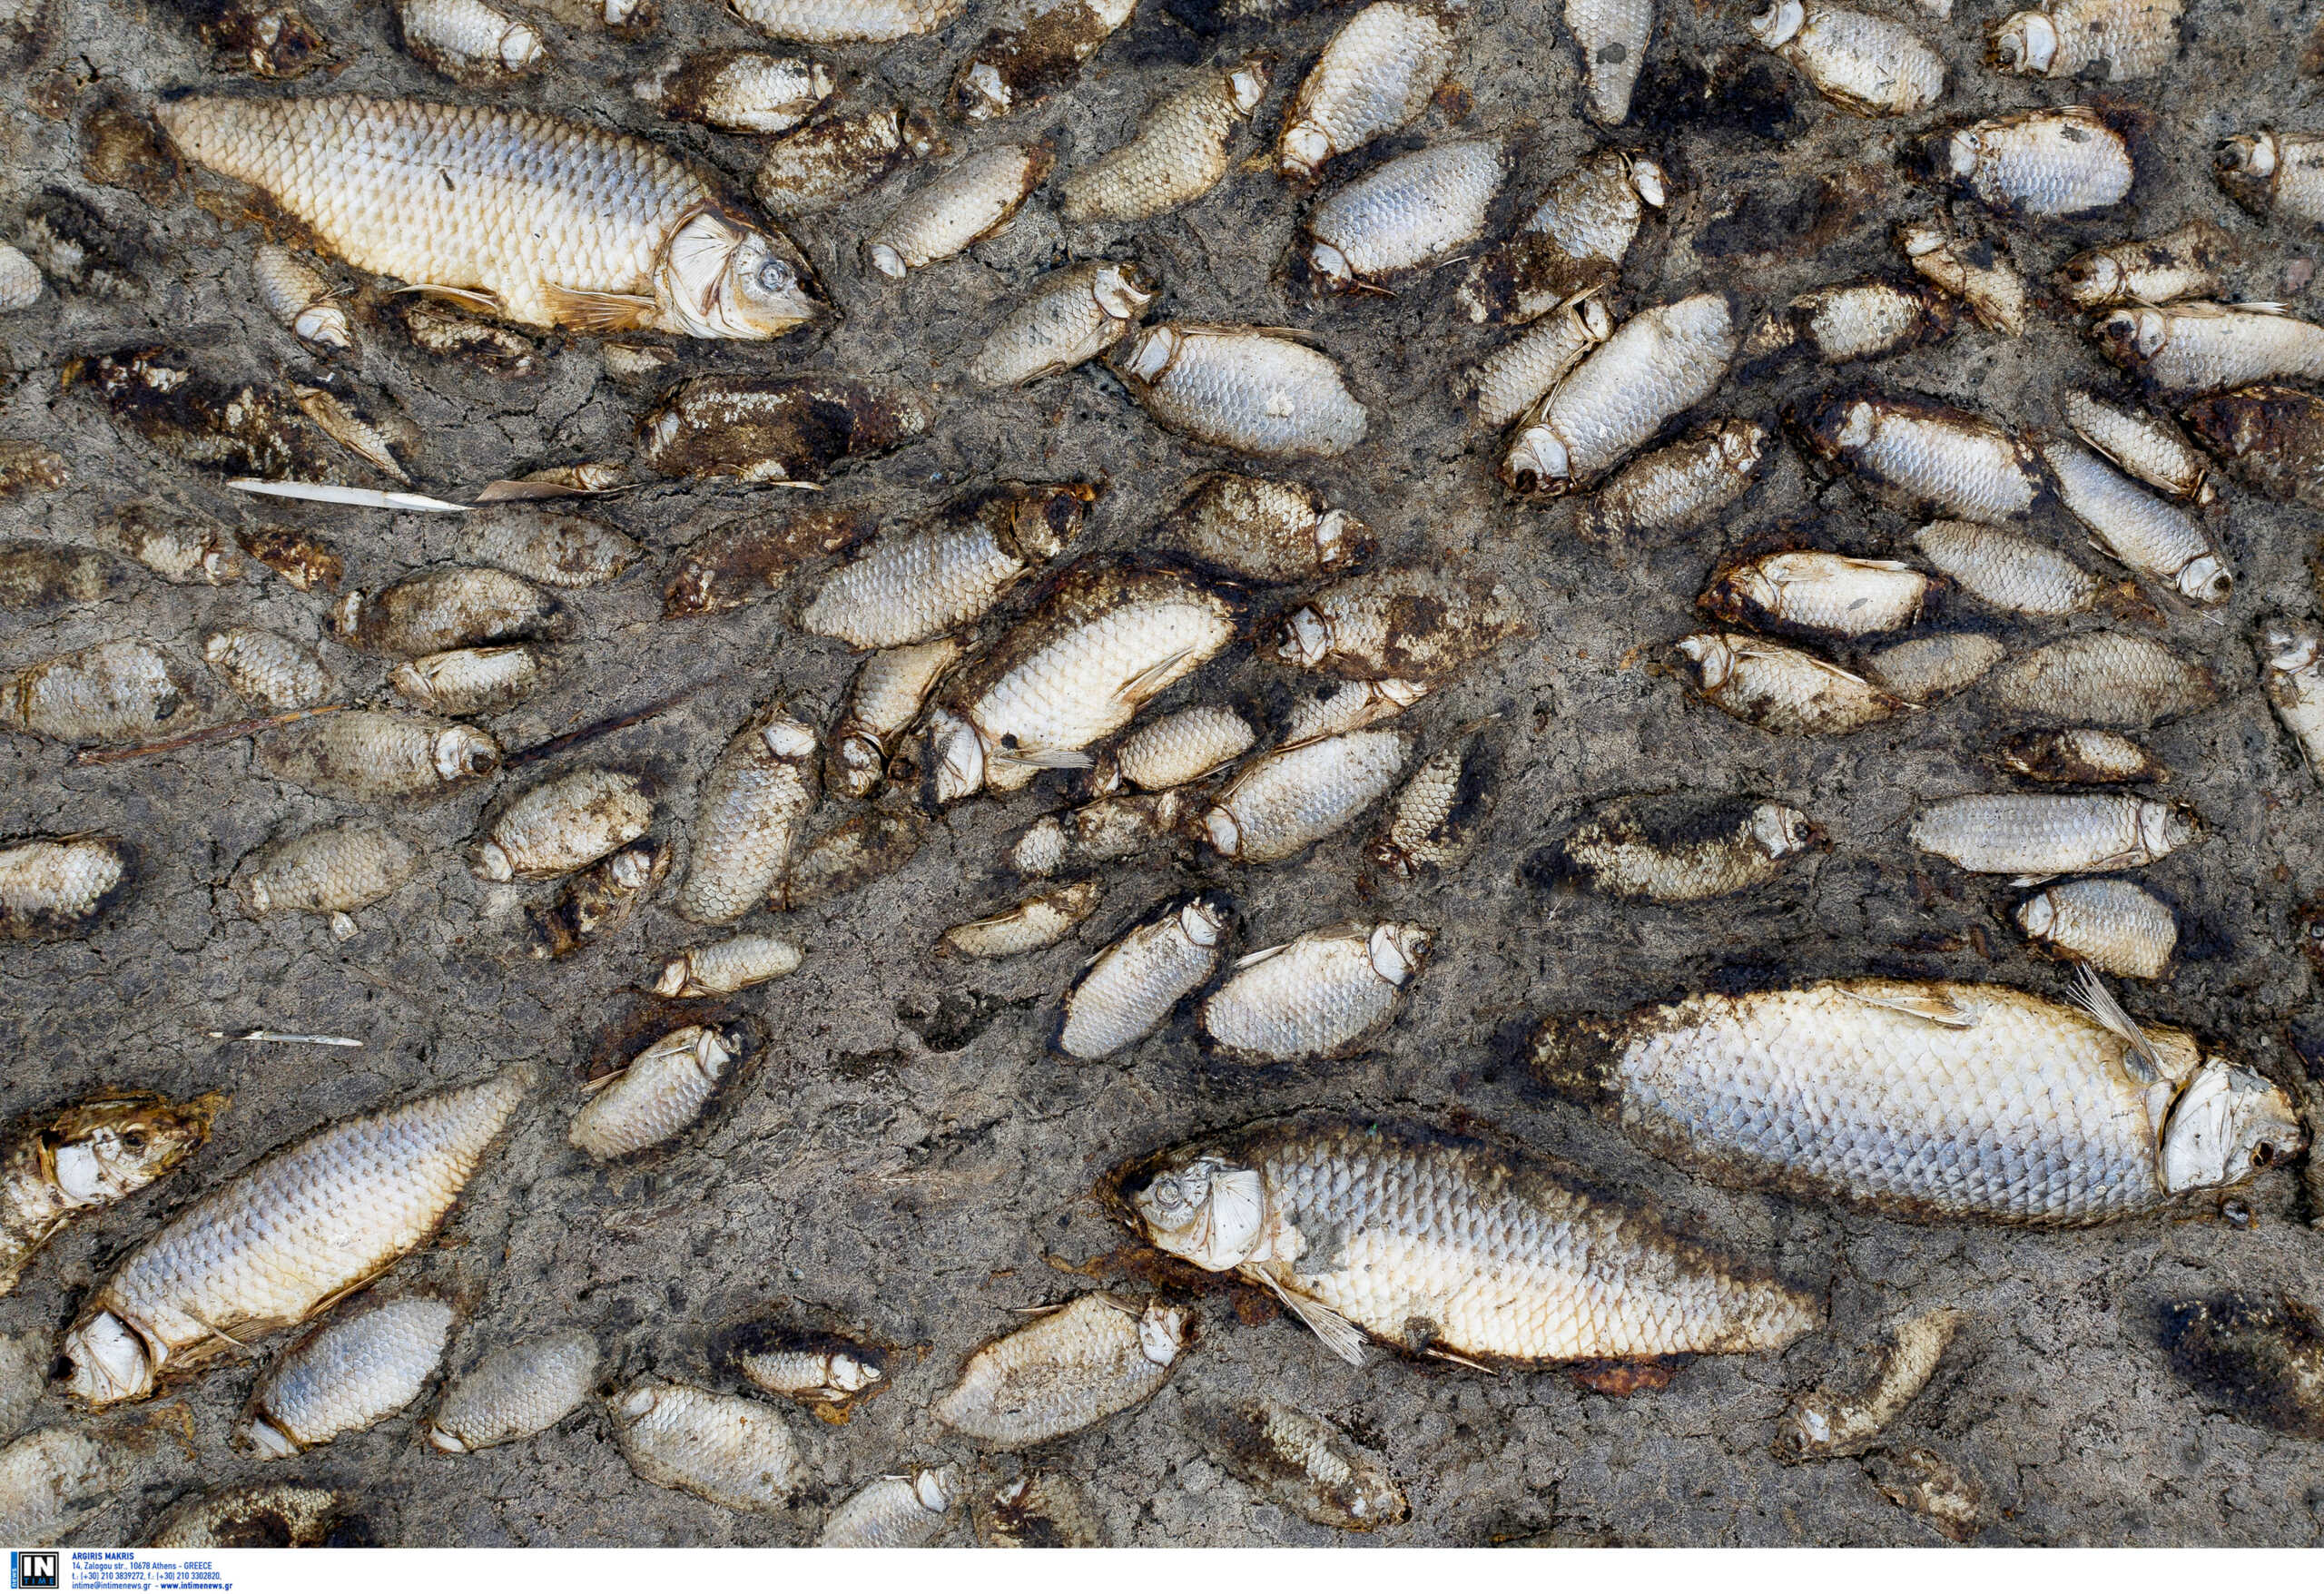 Λίμνη Κερκίνη: εντοπίστηκαν εκατοντάδες νεκρά ψάρια